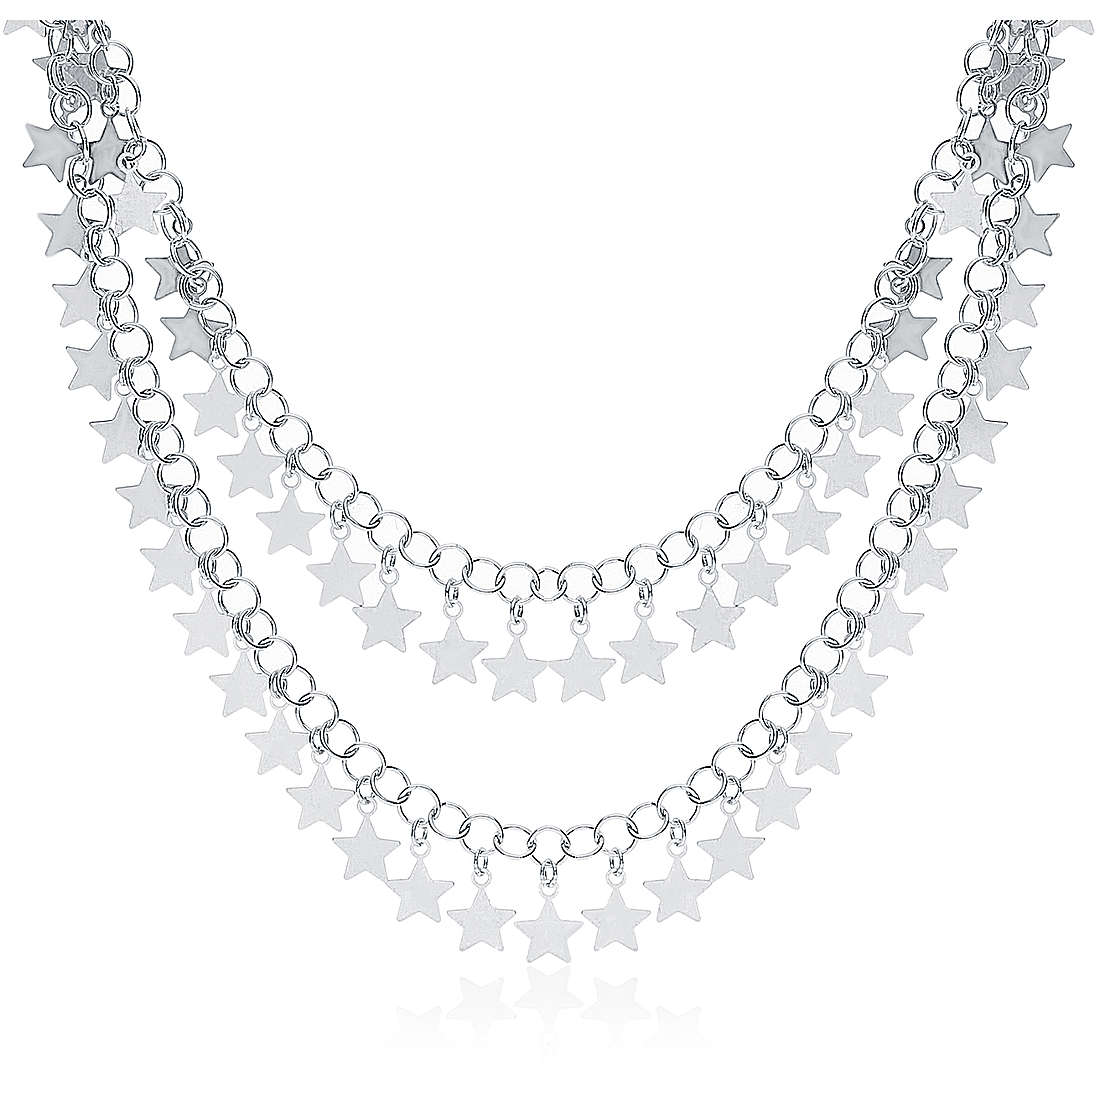 necklace woman jewellery GioiaPura GYCARW0301-S